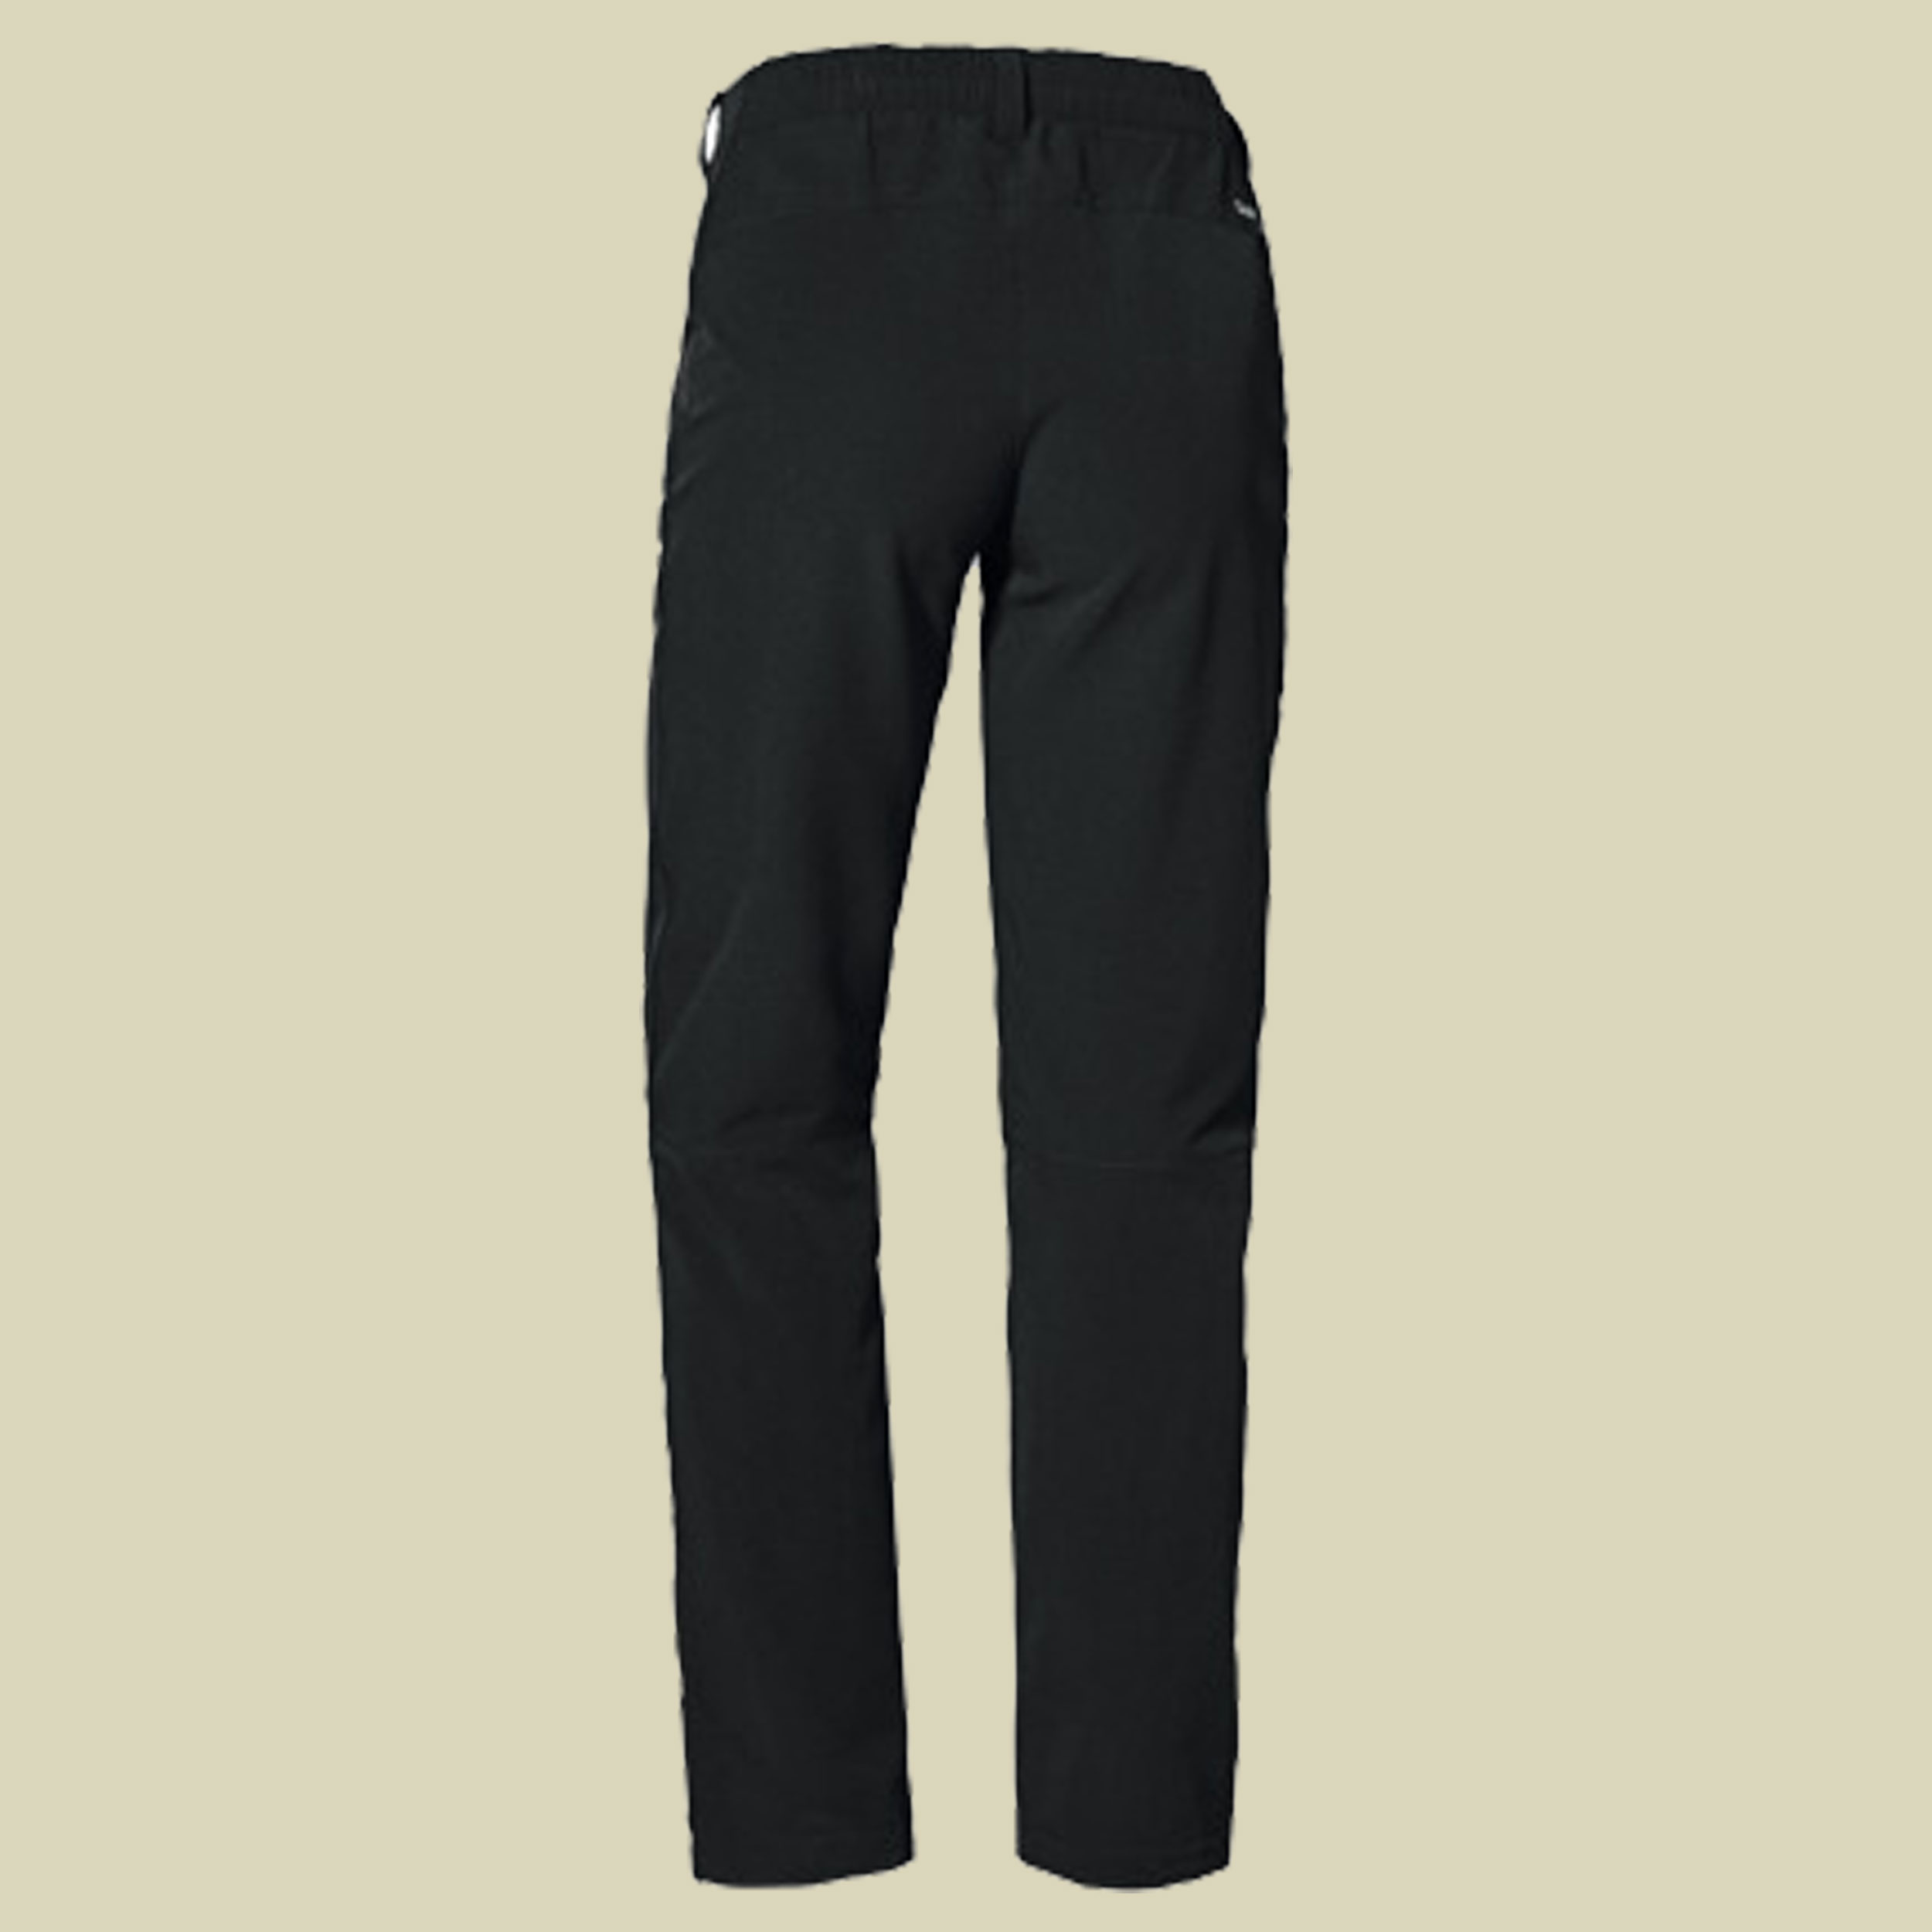 Pants Ascona Warm L Women Größe 40 Farbe black